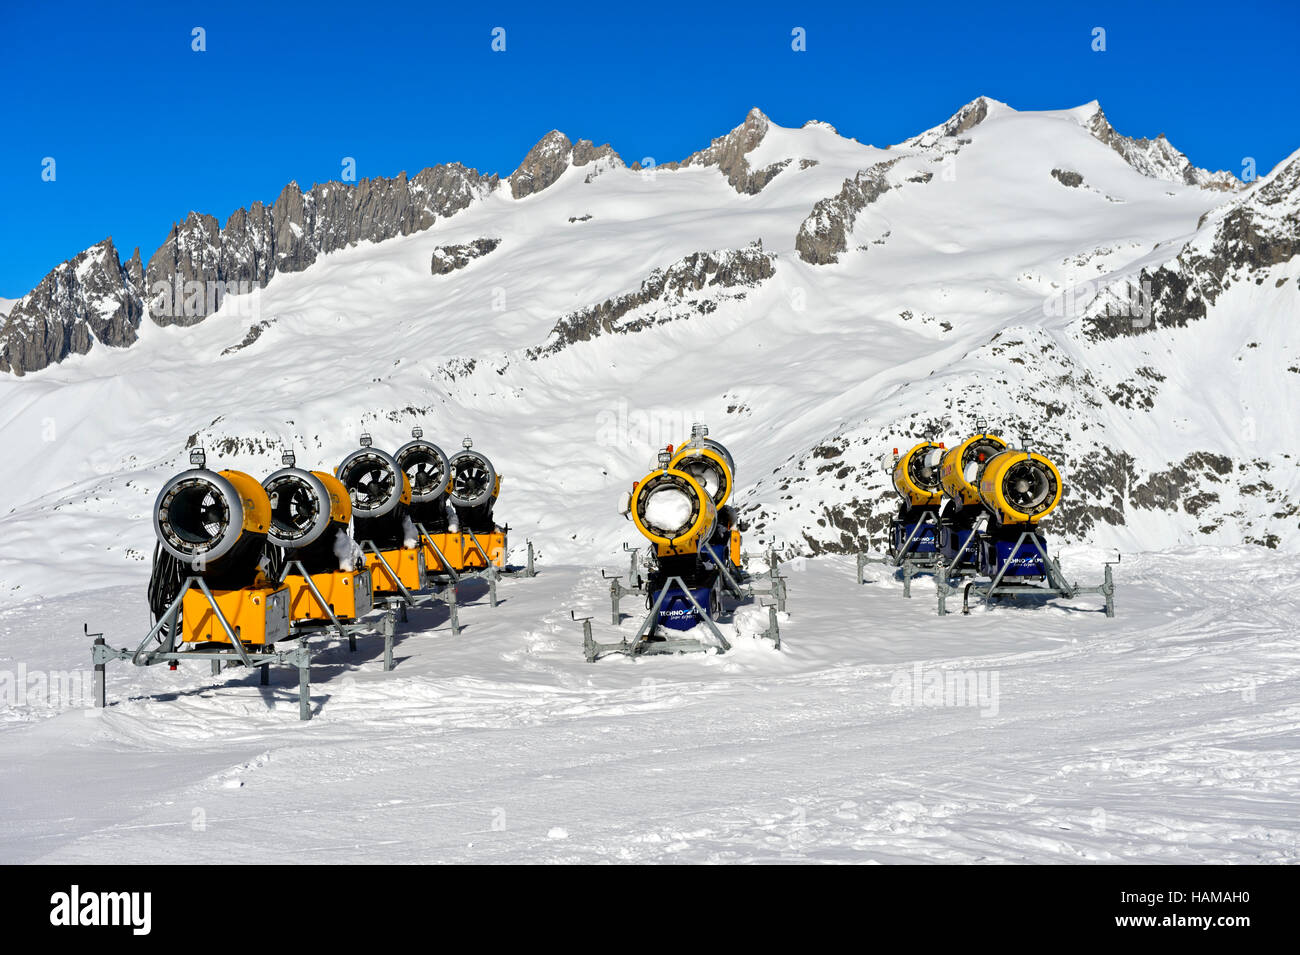 Canons à neige sur la piste de ski, station de ski Aletsch Arena, Bettmeralp, Valais, Suisse Banque D'Images